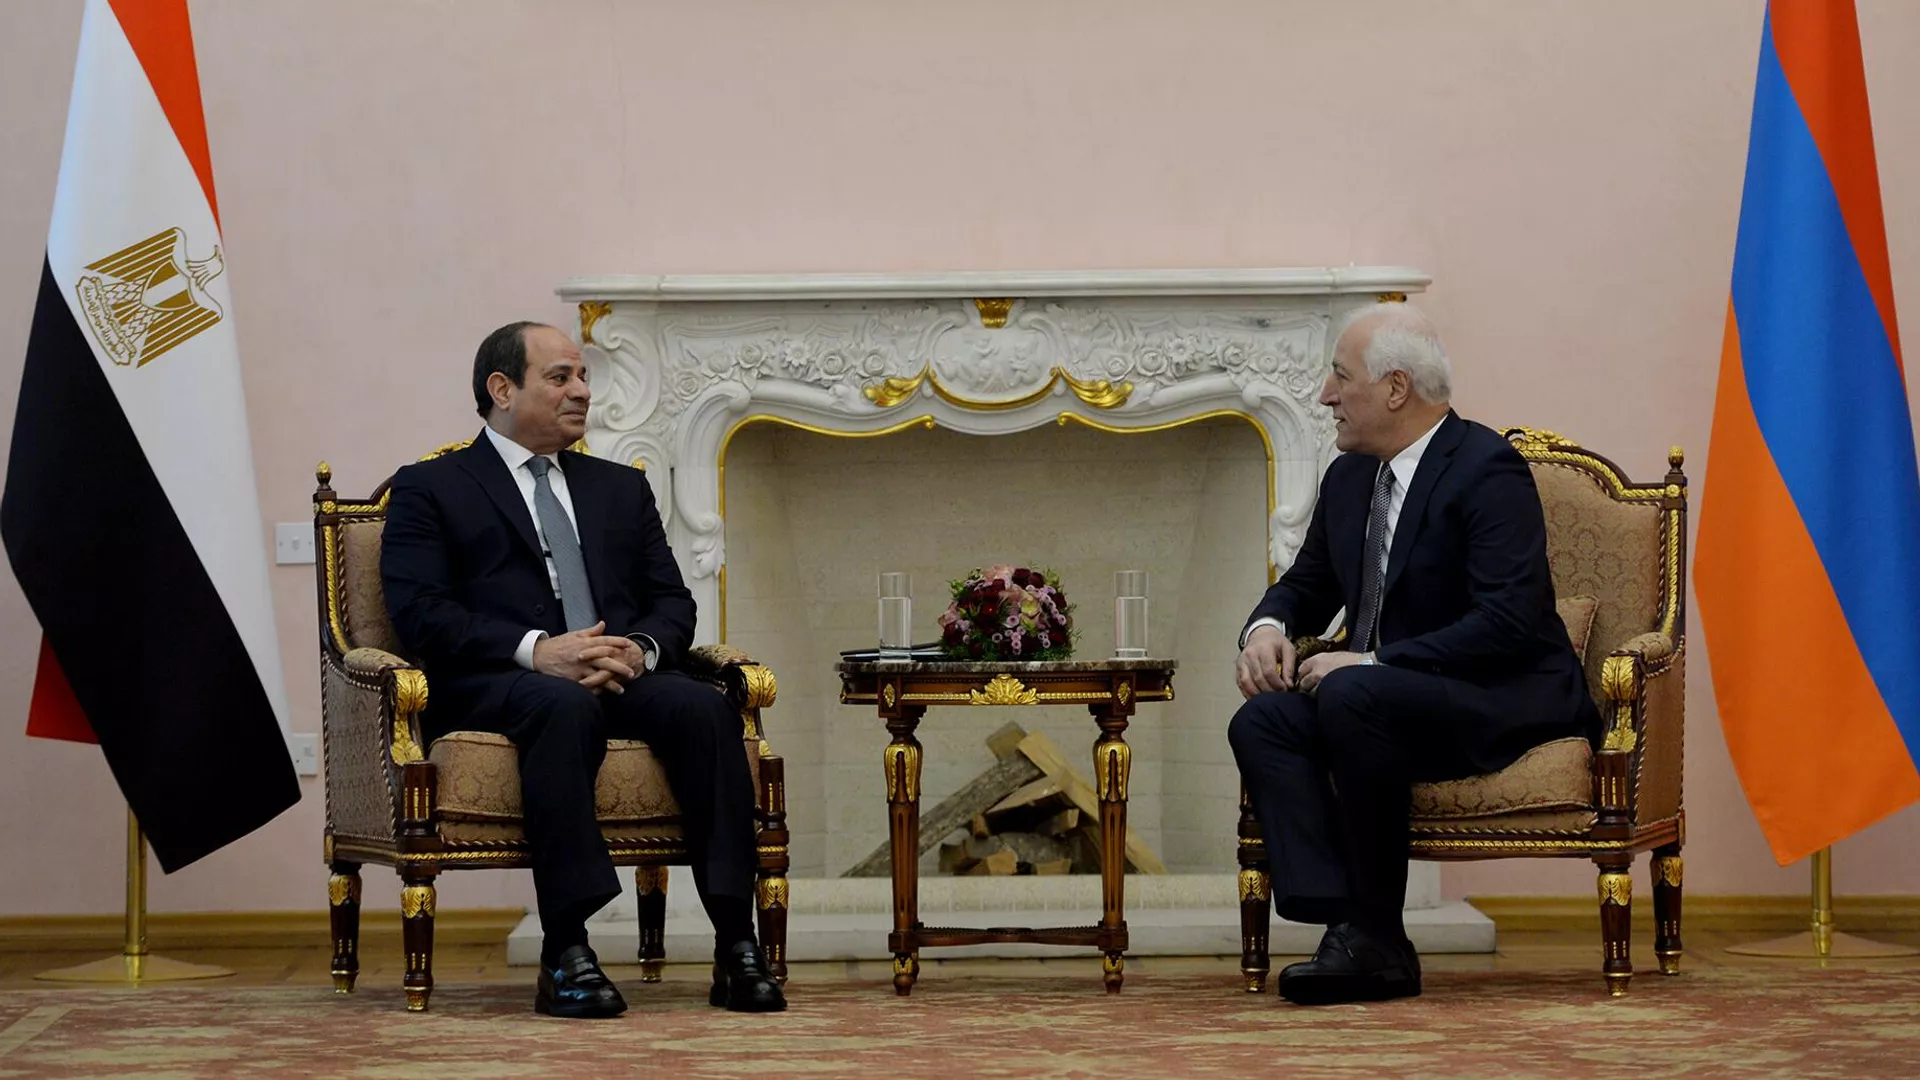 ՀՀ-ն բարձր է գնահատում Եգիպտոսի դրական դերակատարությունը տարածաշրջանի անվտանգության ամրապնդման գործում․ Վահագն Խաչատուրյանը շնորհավորել է Եգիպտոսի նախագահին